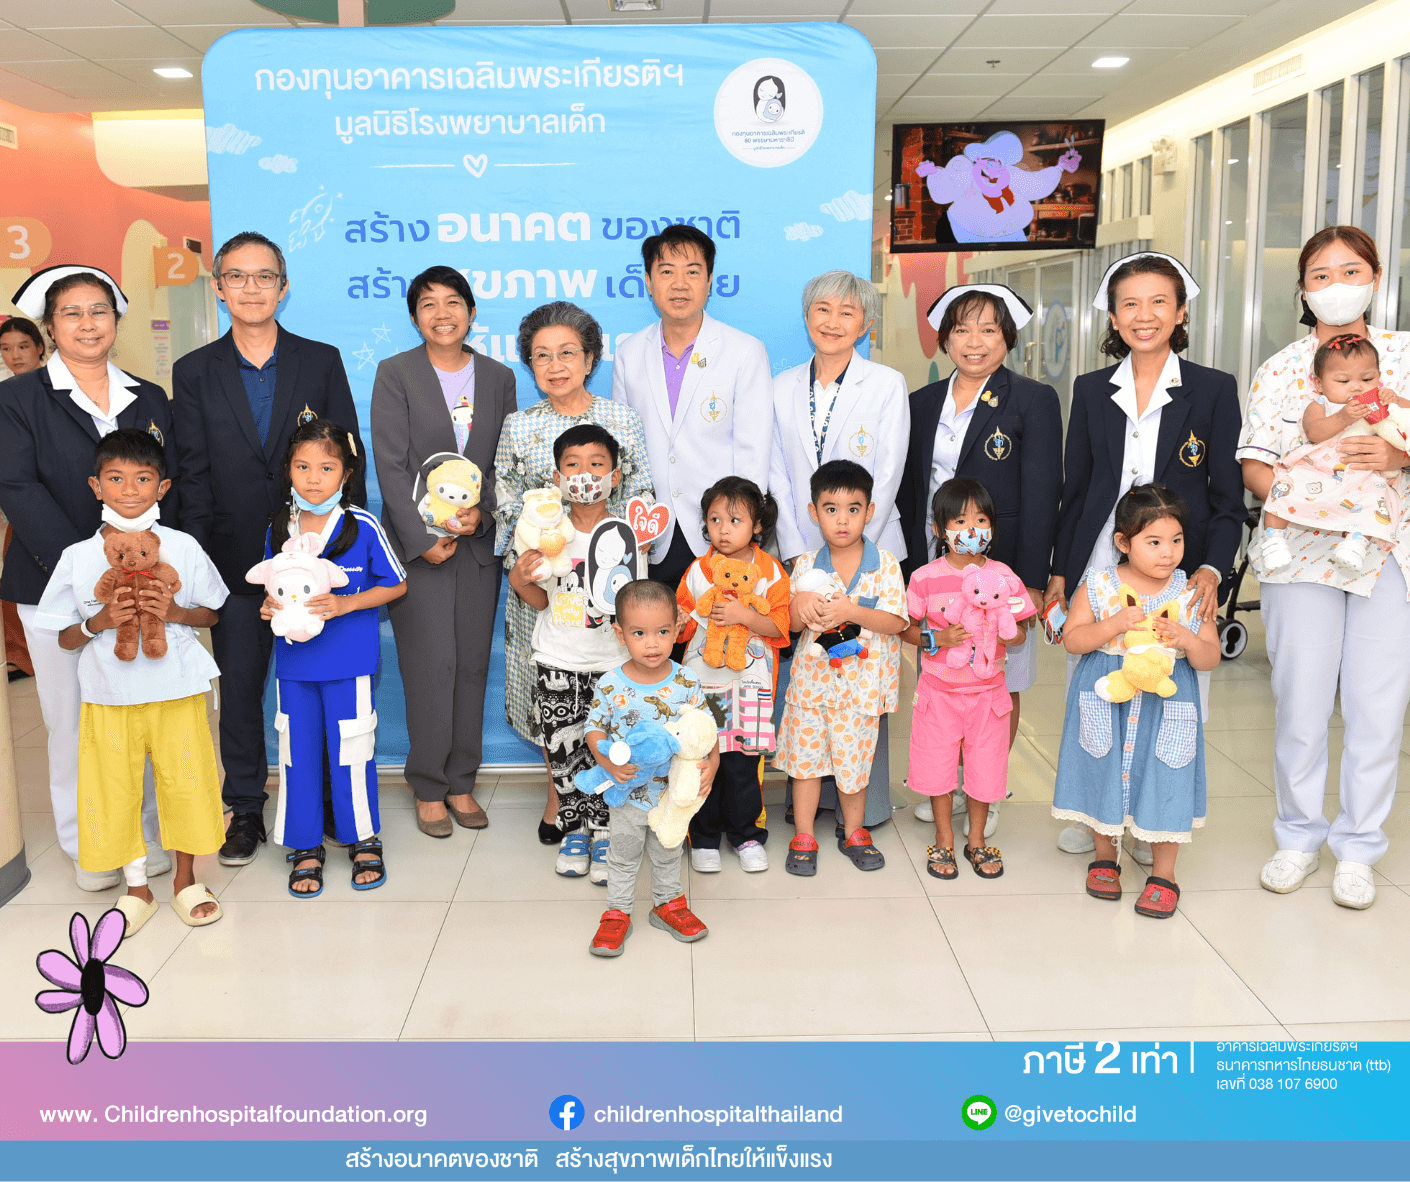 ผู้ใหญ่ใจดีร่วมสร้างอนาคตของชาติ สร้างสุขภาพเด็กไทยให้แข็งแรง